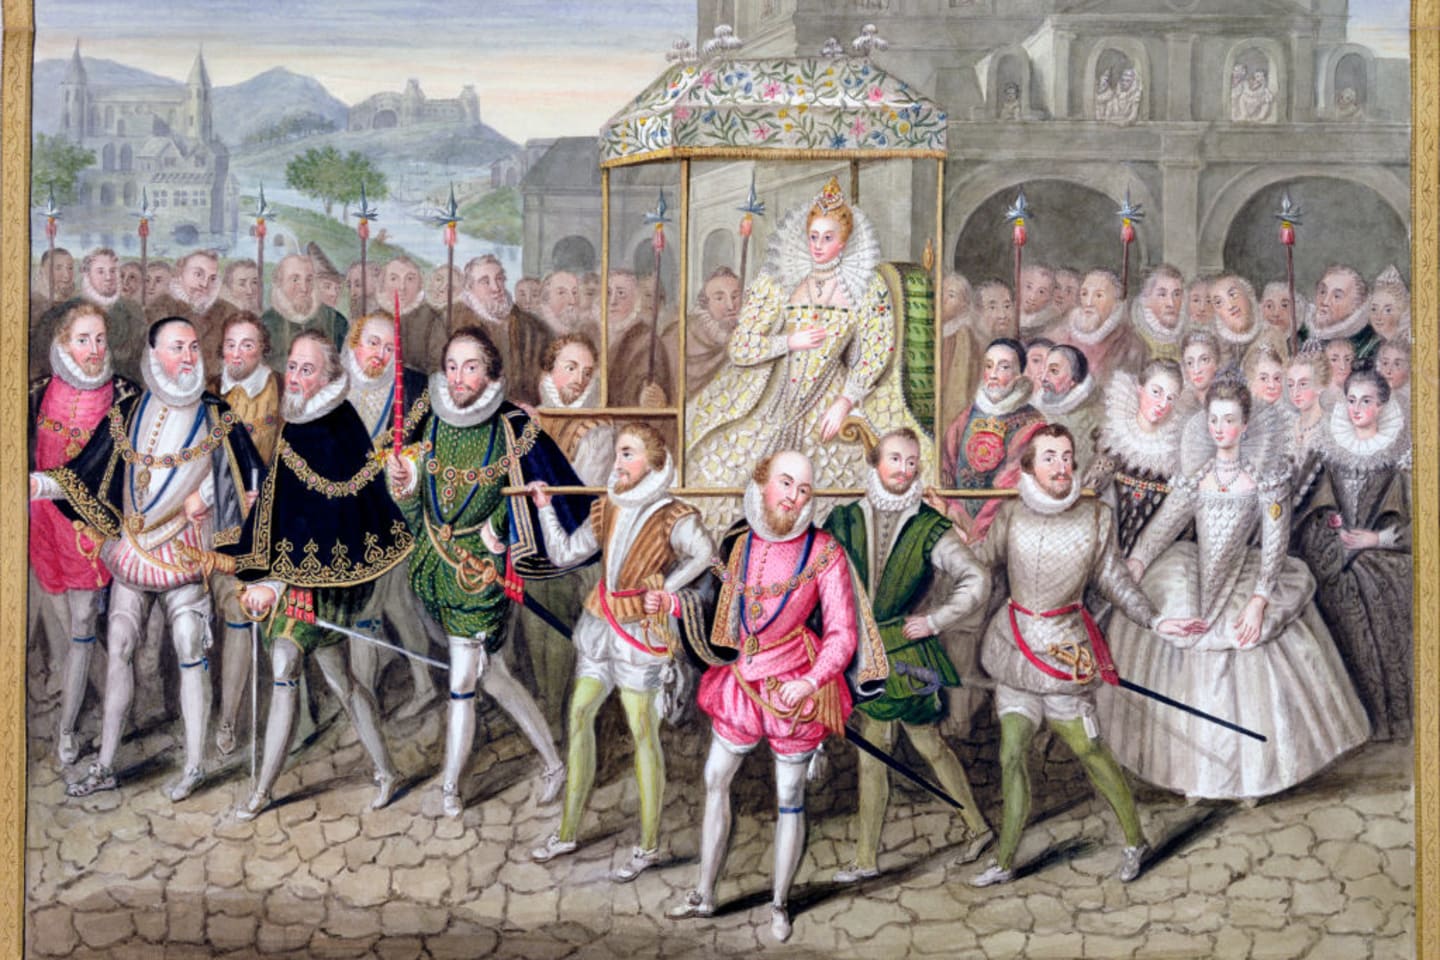 Nữ hoàng Elizabeth I trong đám rước cùng các cận thần